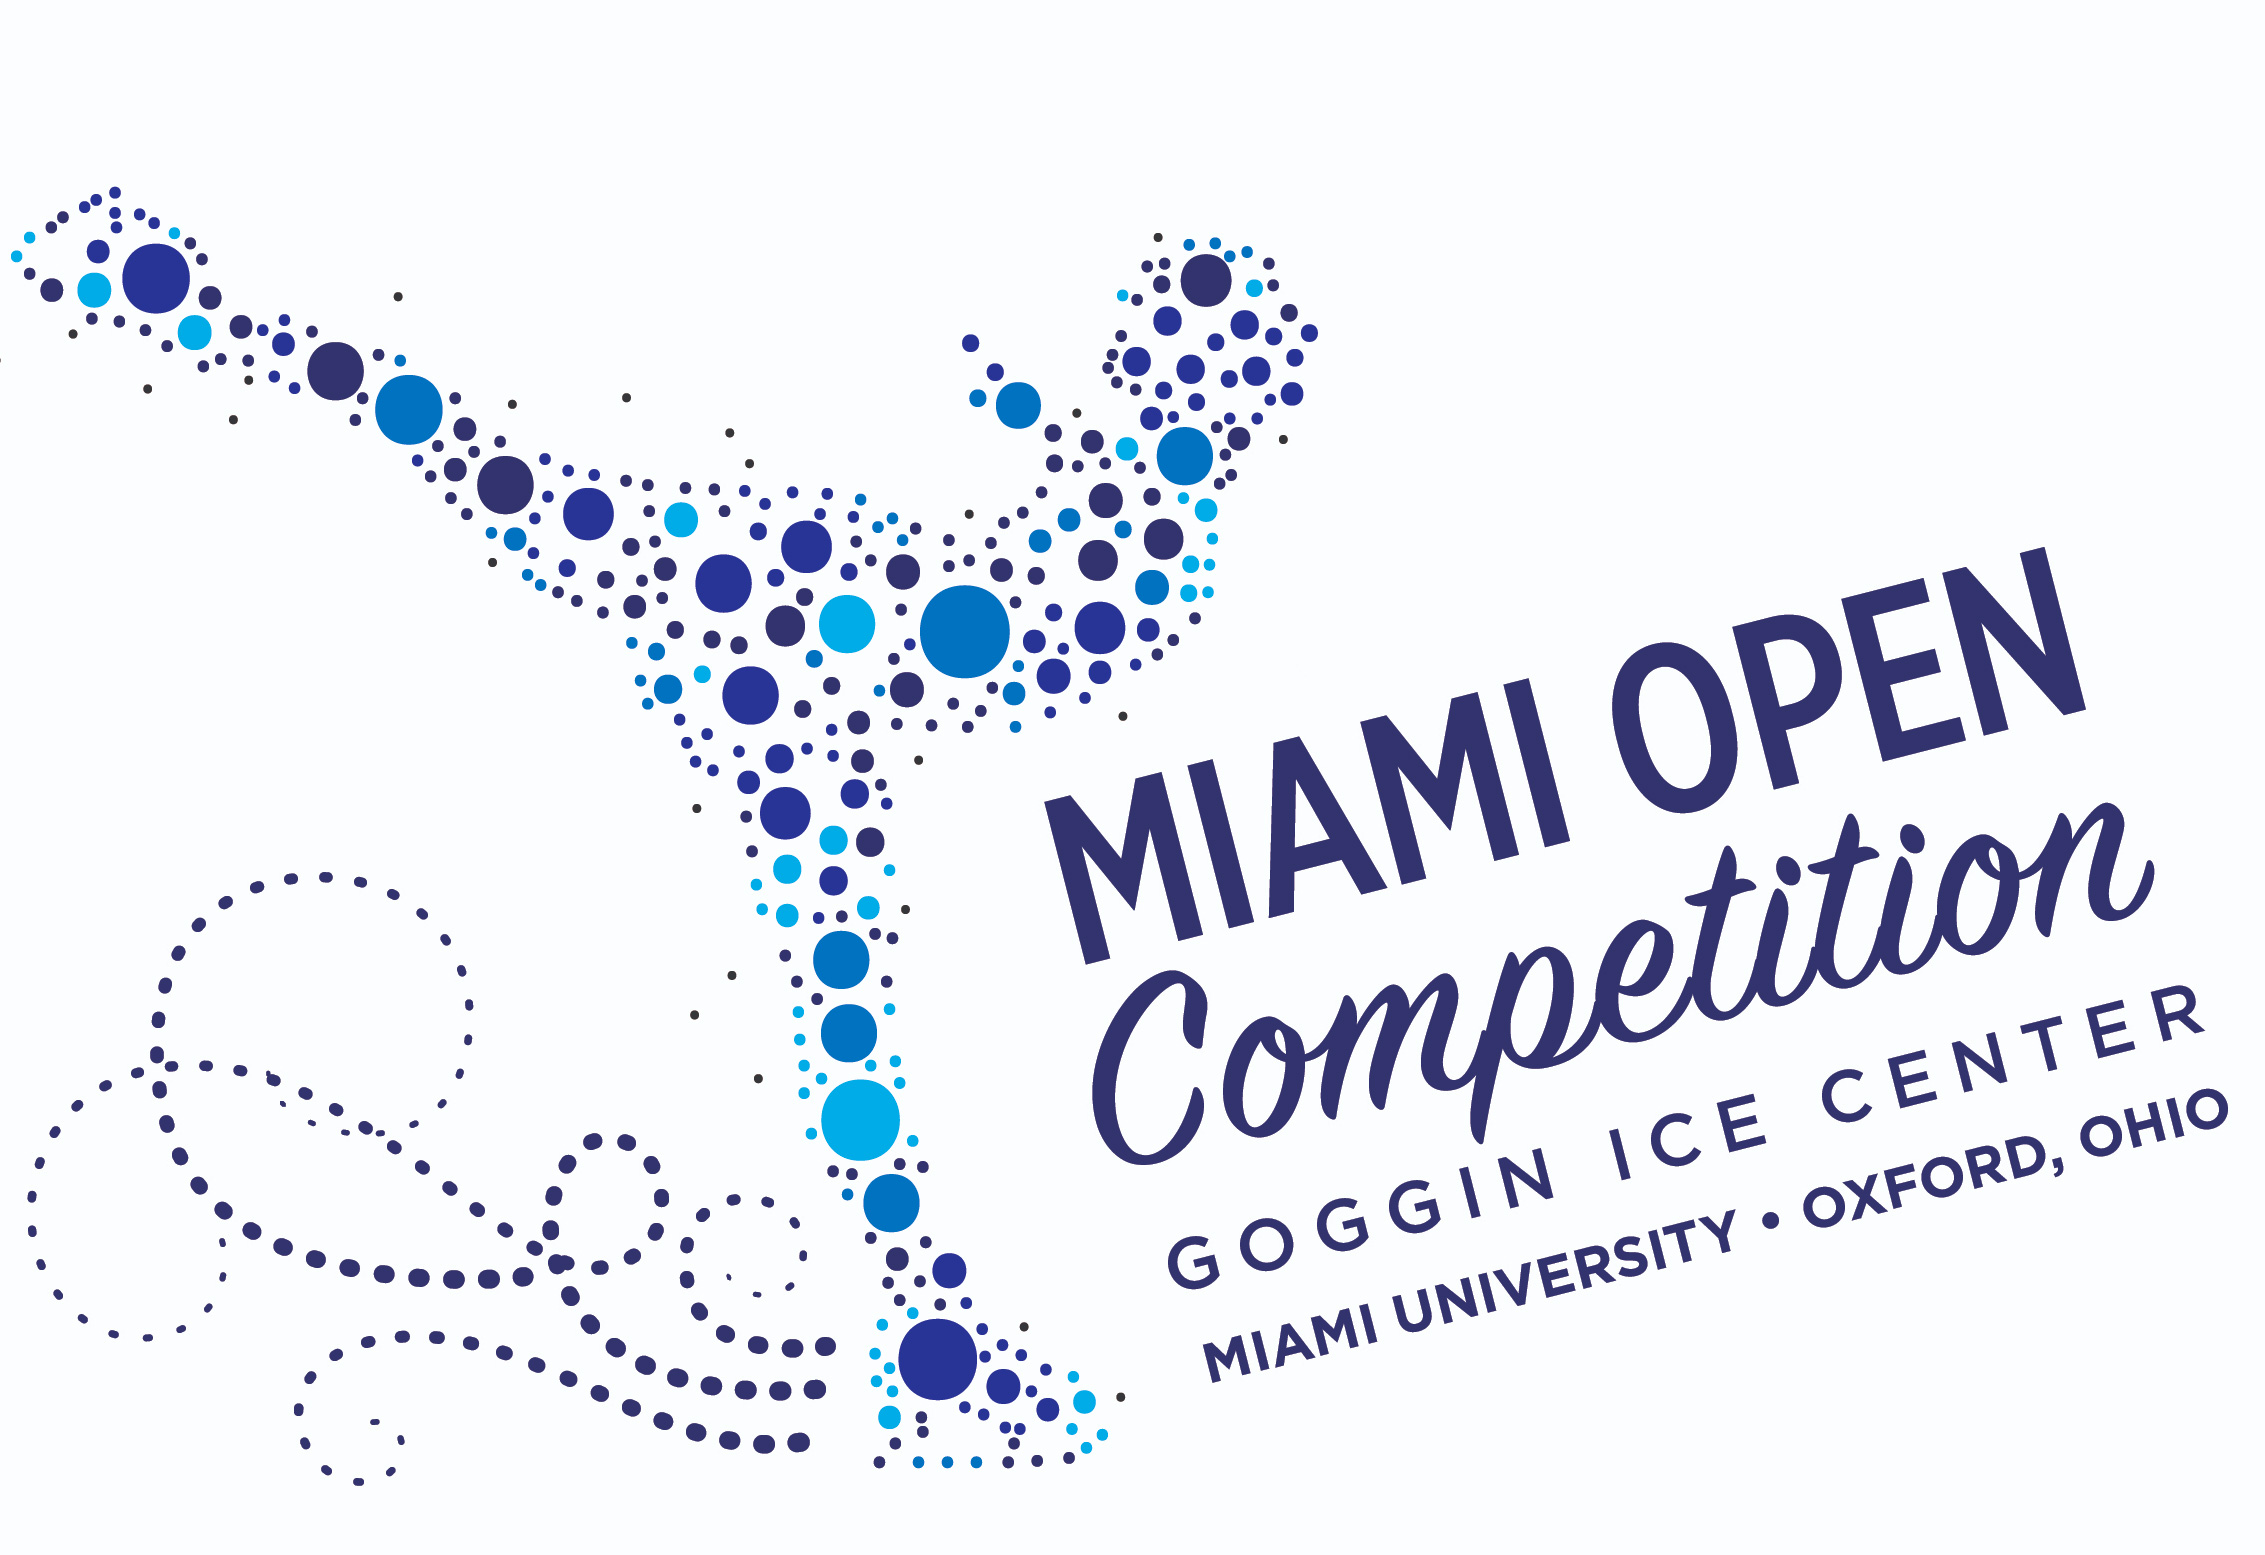 Miami Open Competition. Goggin Ice Center. Miami University, Oxford, Ohio